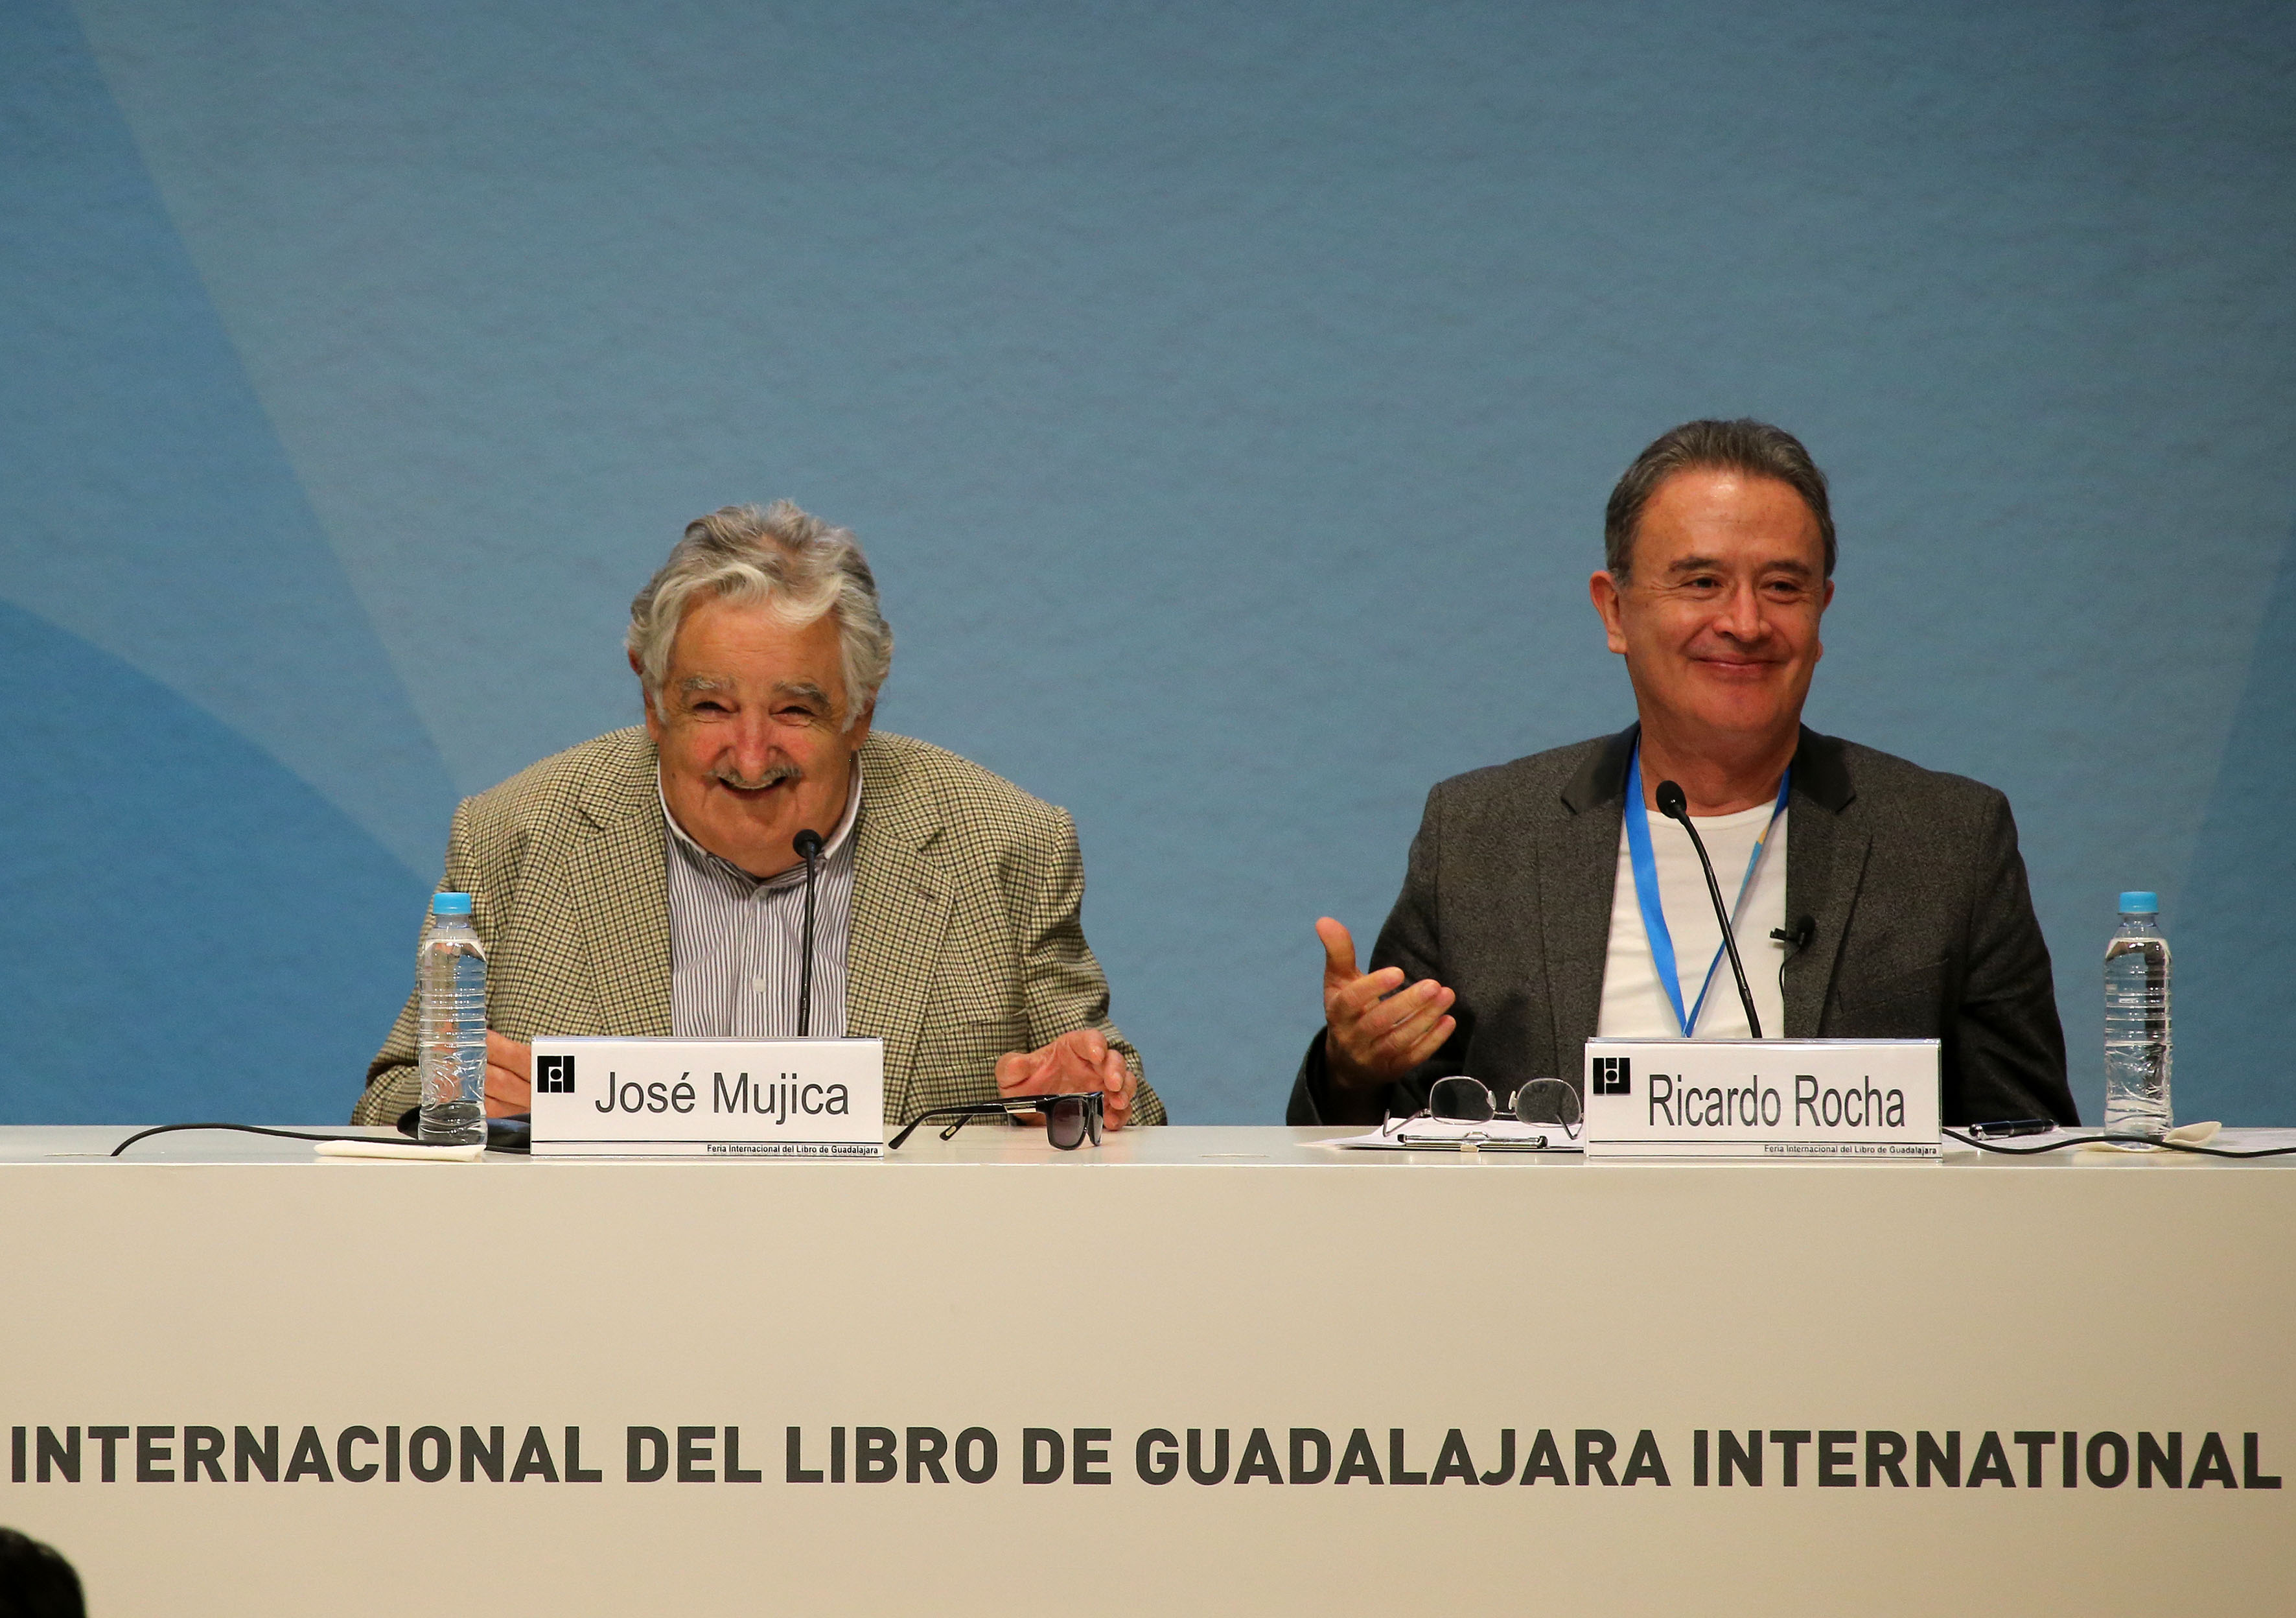 El presidente de Uruguay sostuvo un diálogo con el periodista Ricardo Rocha en la FIL Guadalajara